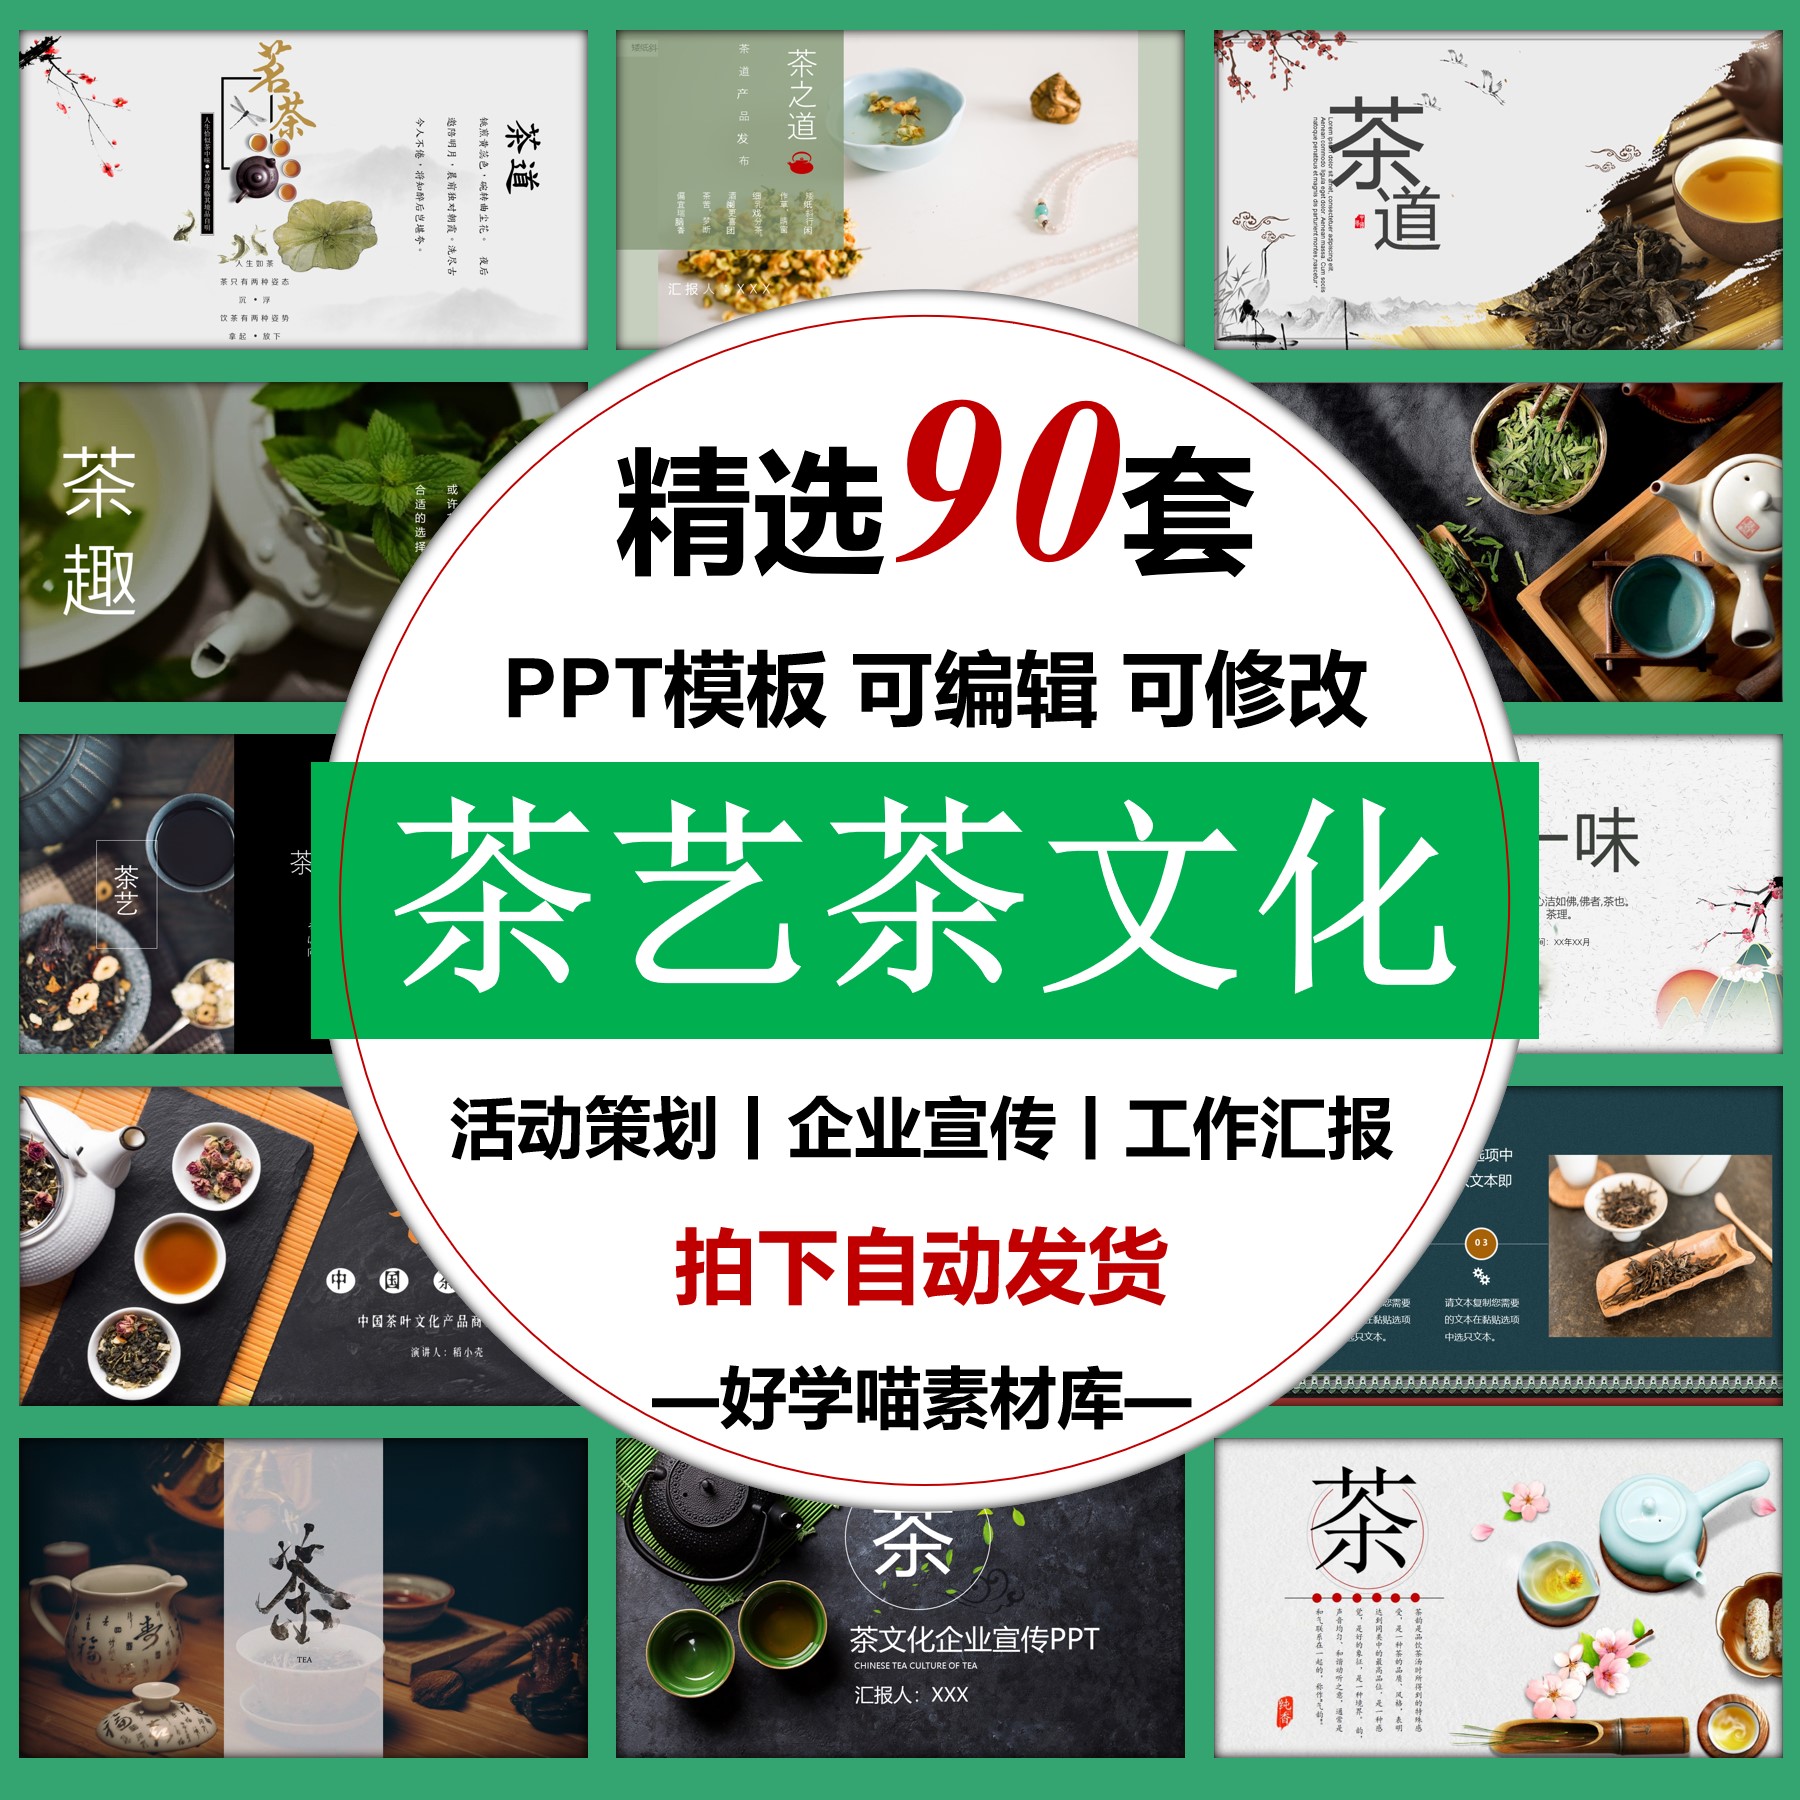 茶艺茶文化ppt模板适用茶馆茶楼品茶产品宣传活动茶道表演点茶